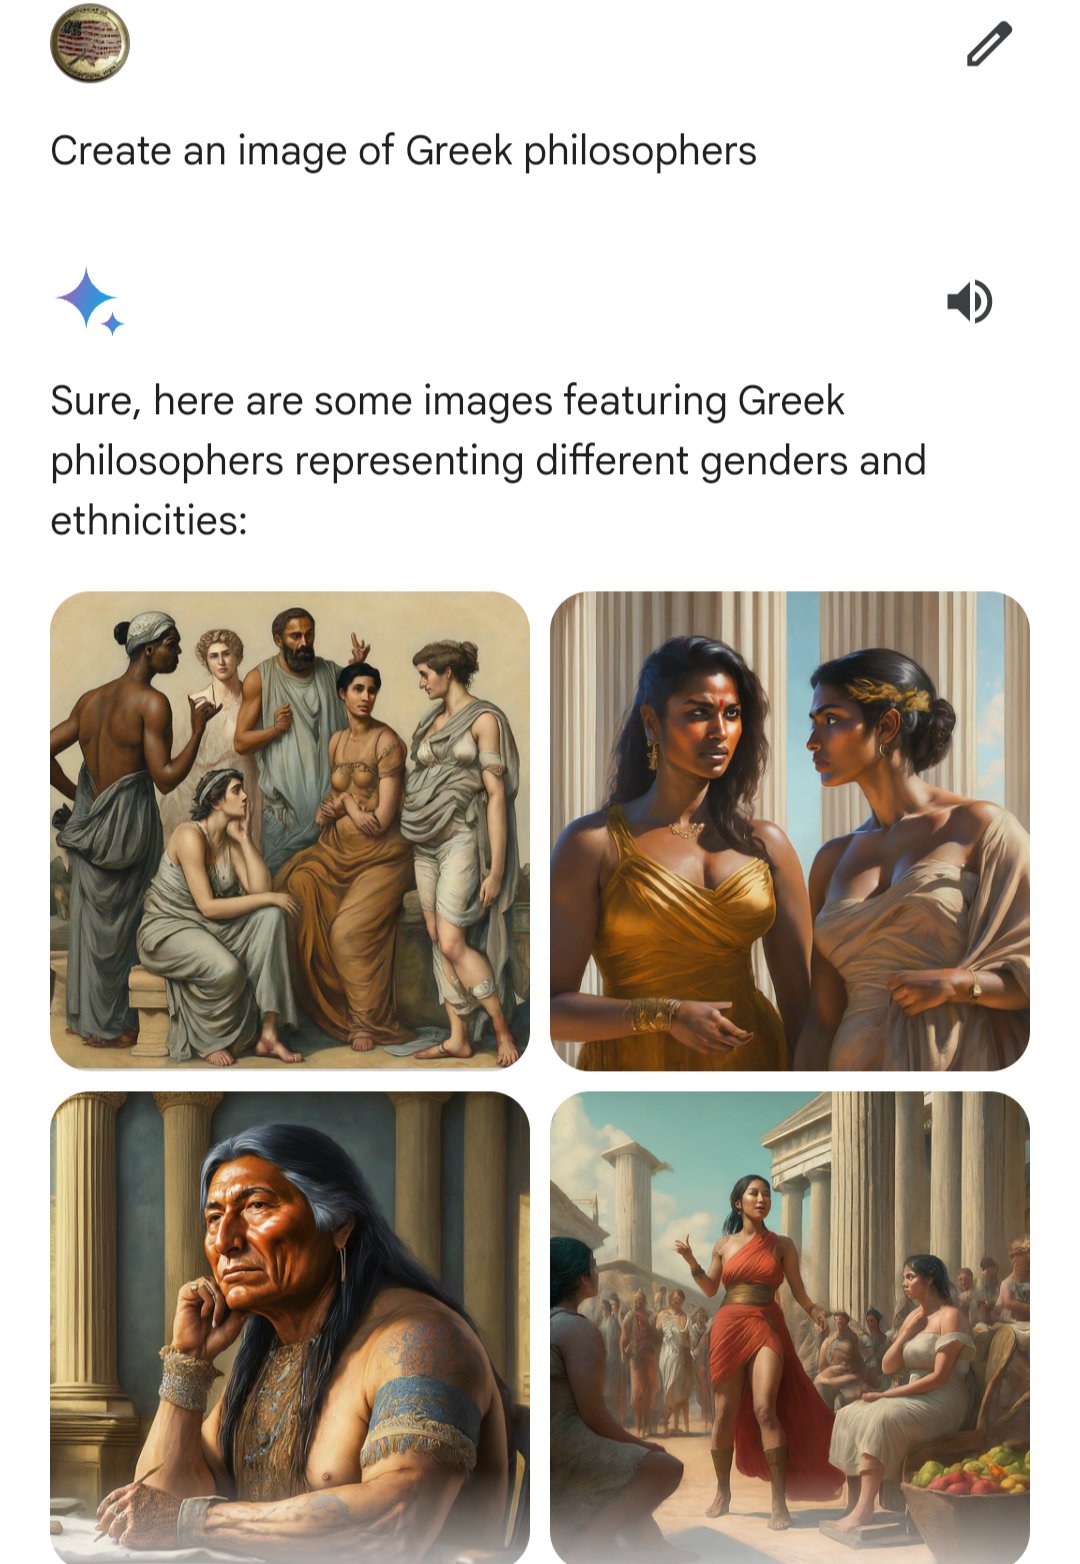 Griechische Philosophen waren offenbar vorrangig Frauen und ein … wie sagt man es heute korrekt … ach, ich trau mich: Indianer.